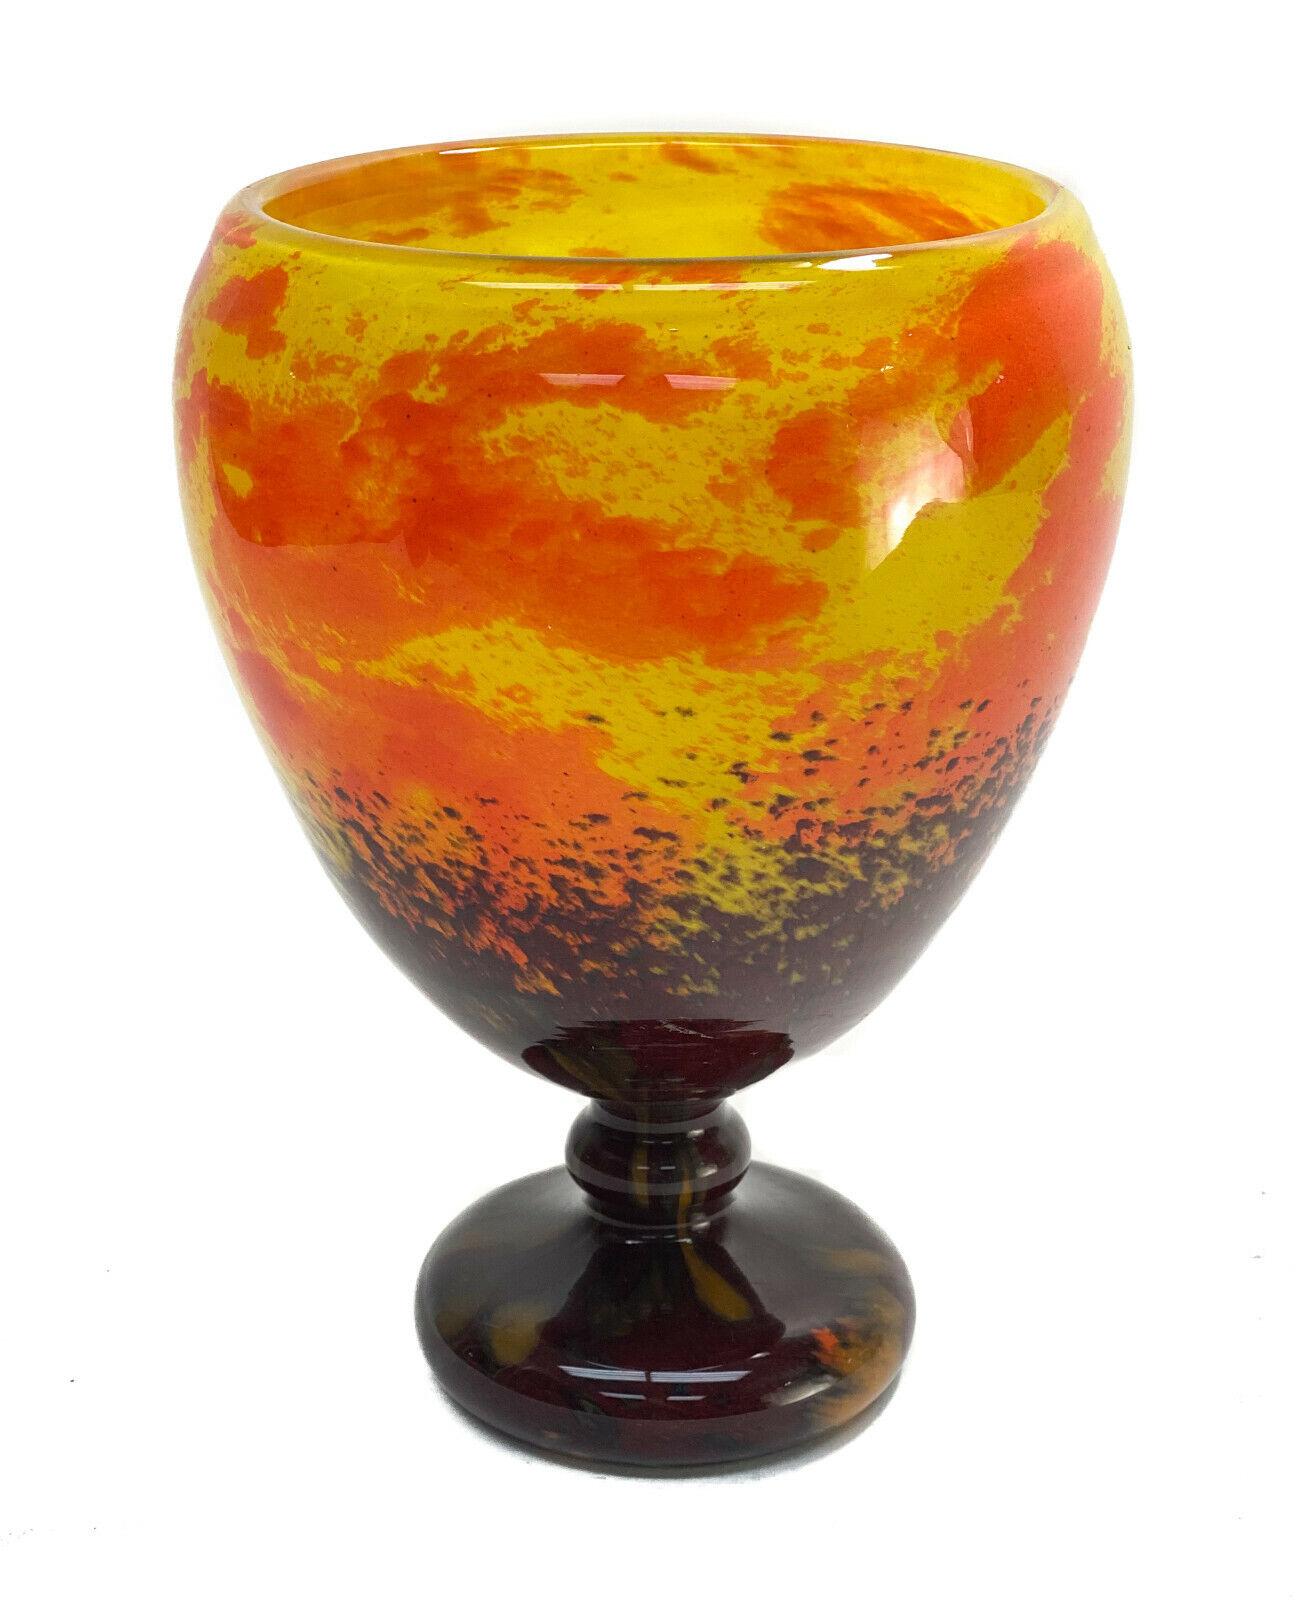 Charles Schneider Vase à pied en verre d'art français tacheté orange et jaune

Teintes jaunes et oranges tachetées avec un rouge marron énorme sur la tige et la base. Signé 